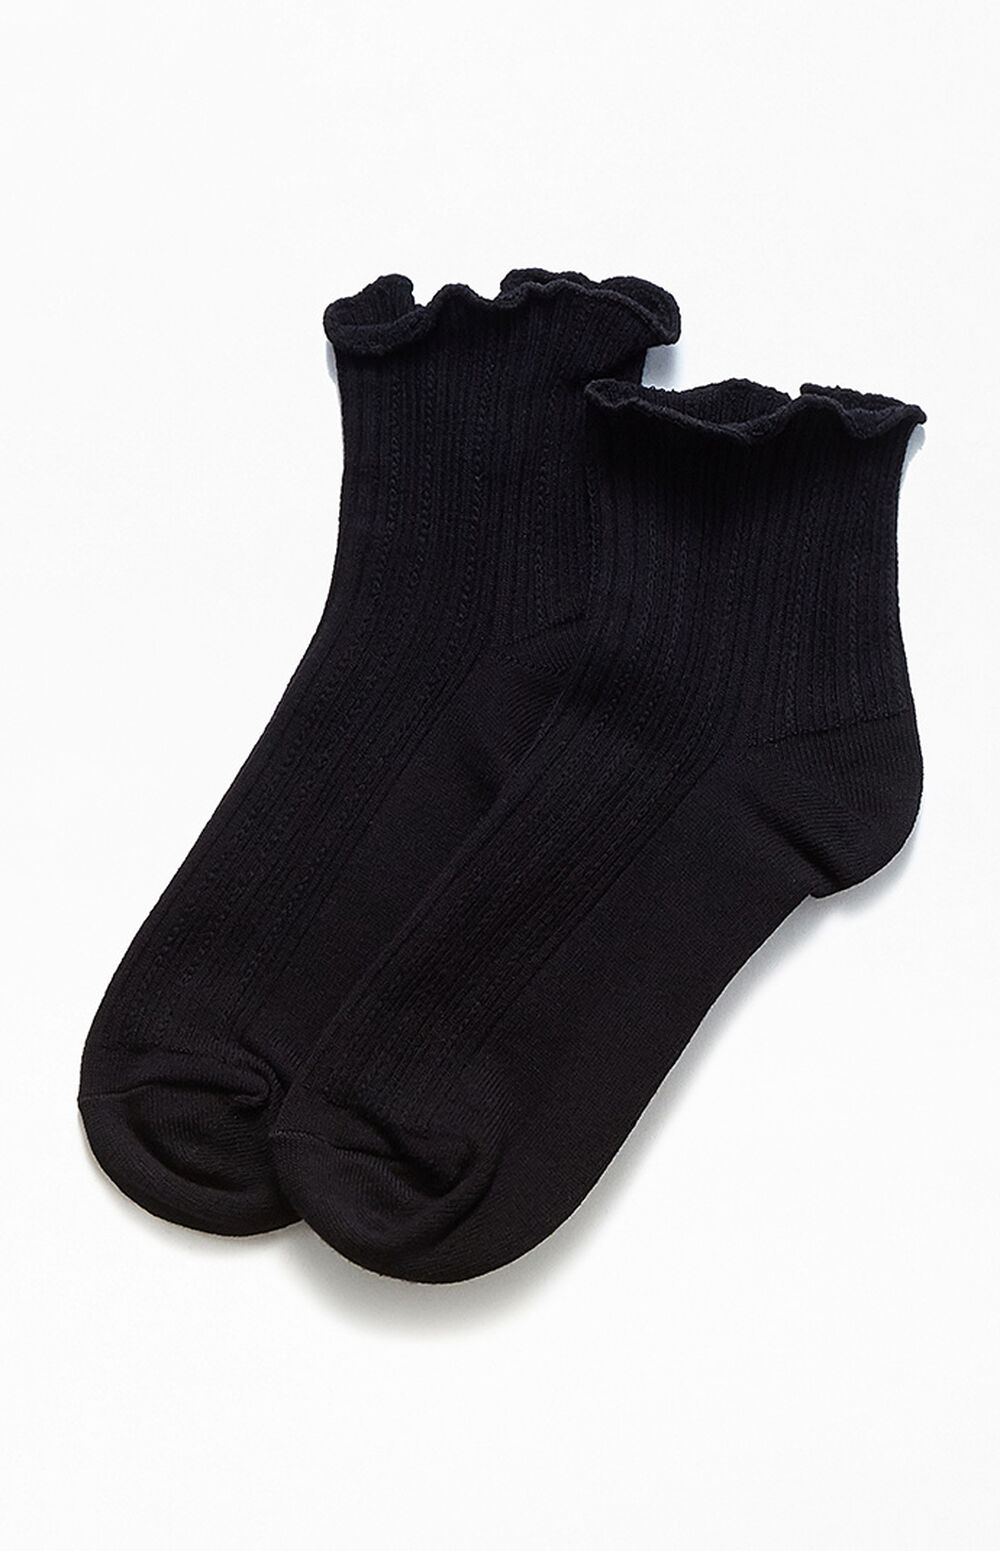 John Galt Black Ruffle Socks | PacSun